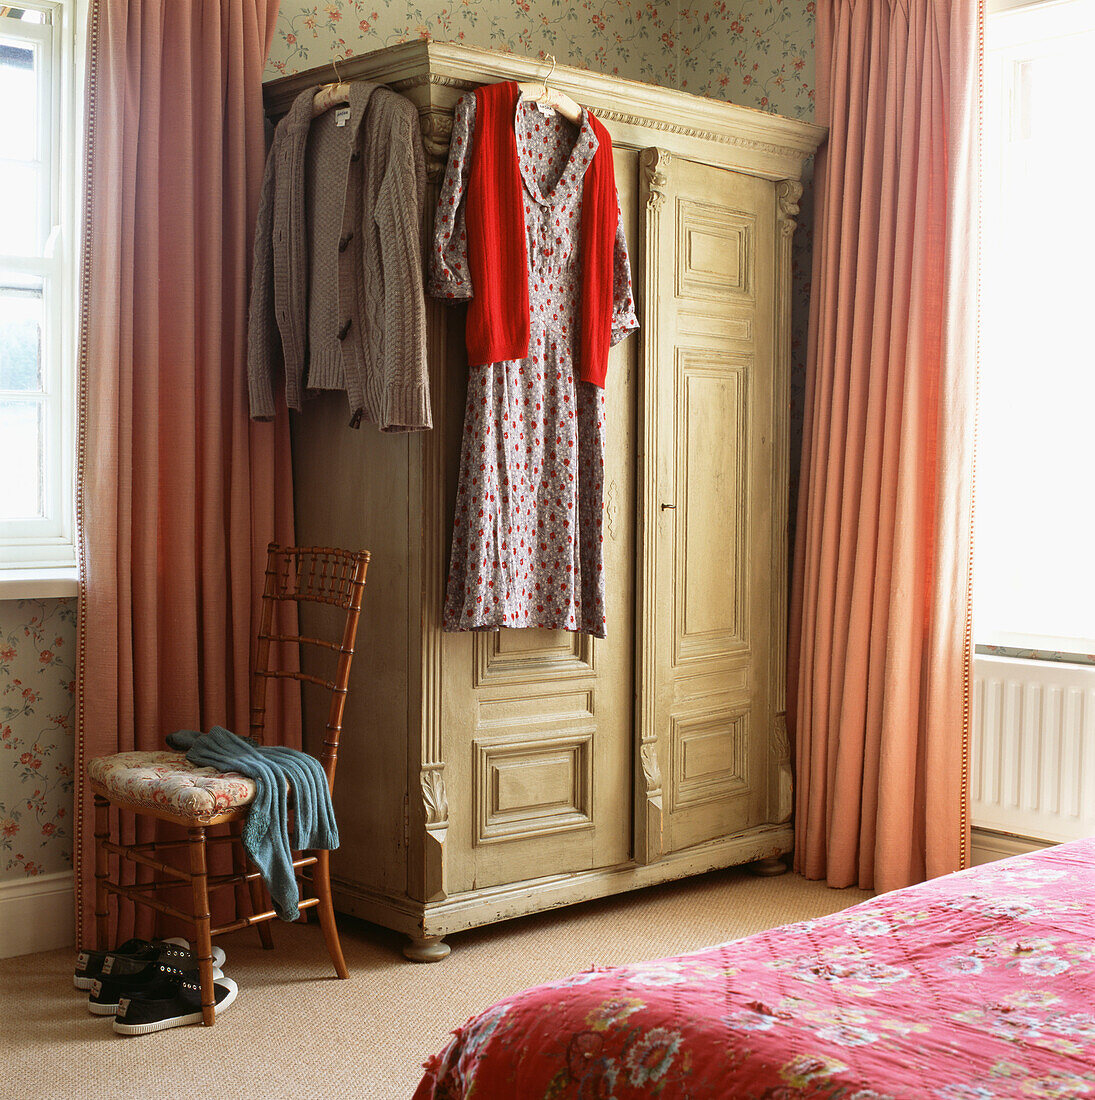 Wardrobe in bedroom